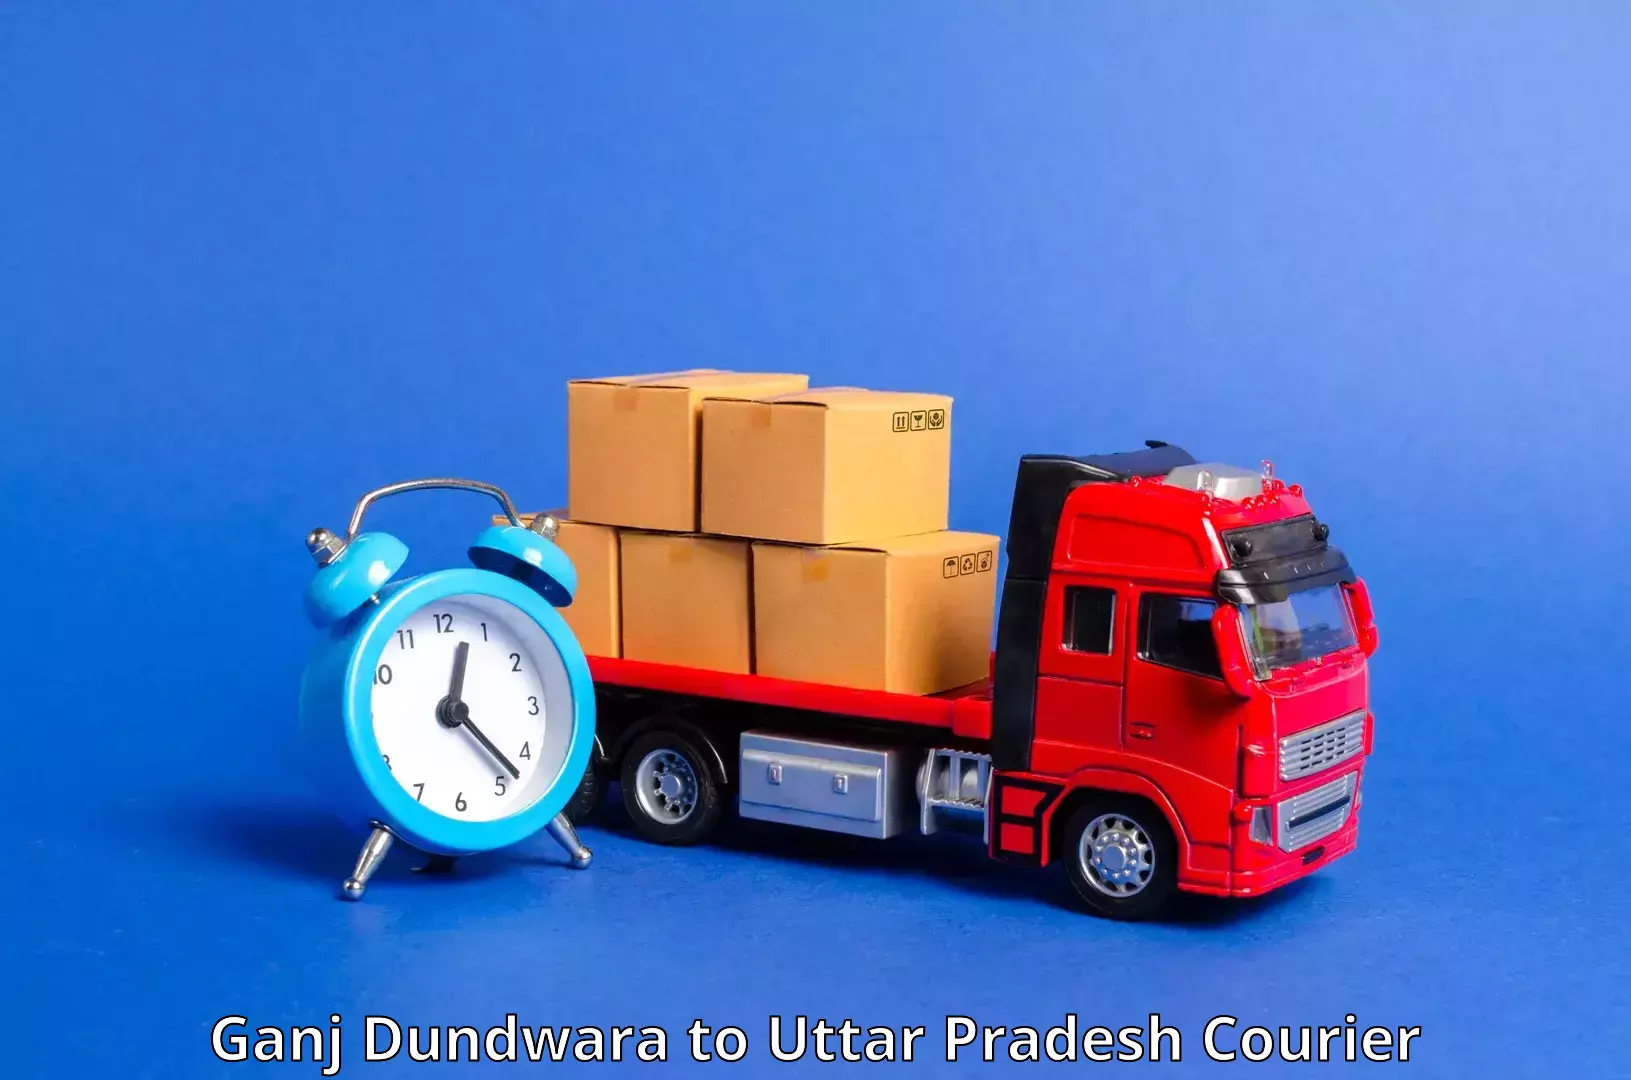 Express postal services Ganj Dundwara to Rampur